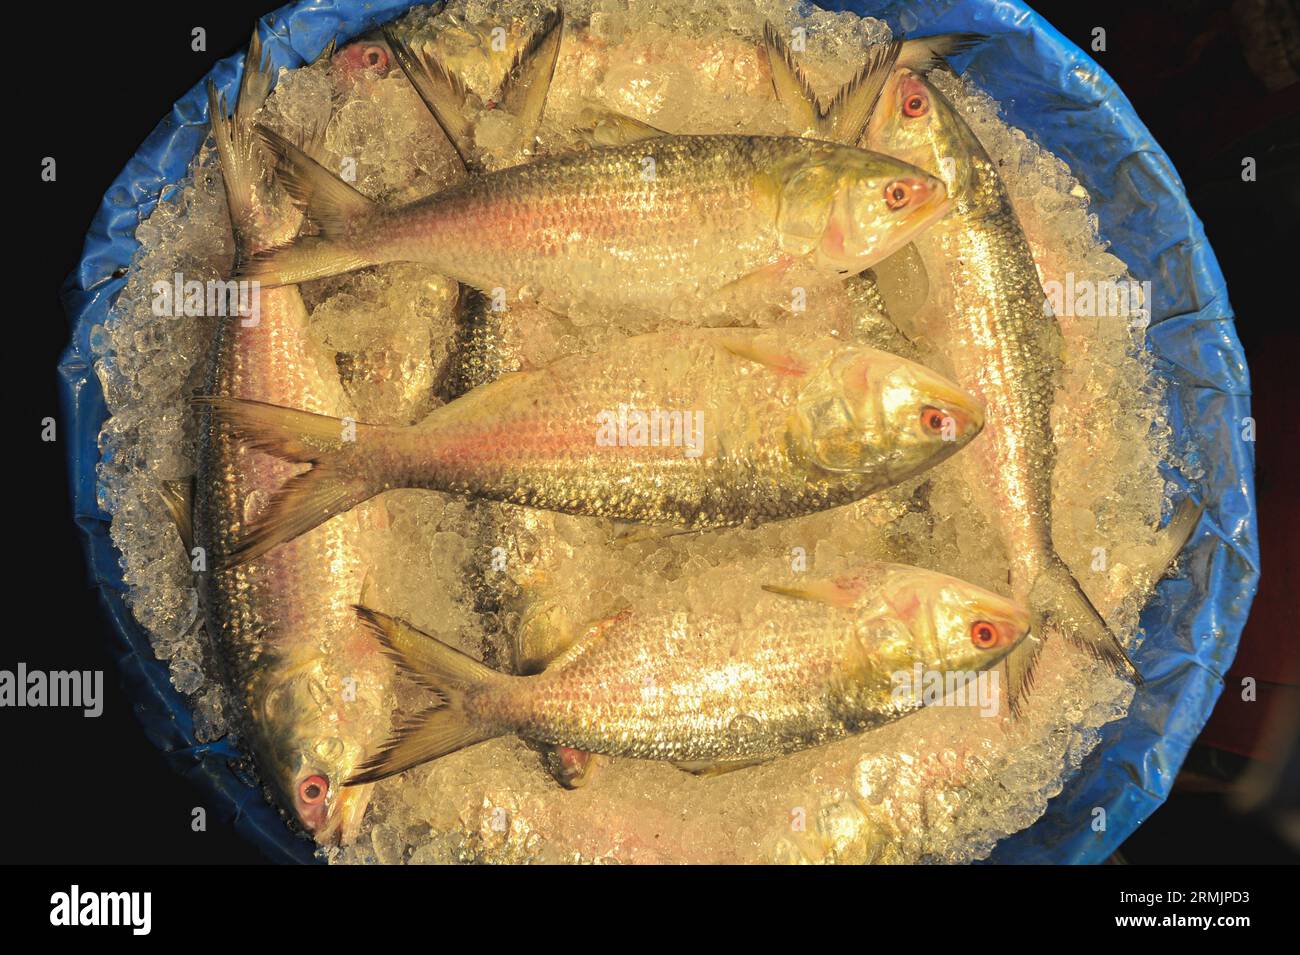 Die Menschen kaufen Hilsa-Fisch auf dem Lalbazar-Fischmarkt in Sylhet. Obwohl in letzter Zeit in den Flussmündungen und Meeren eine große Menge HILSA-Fisch von Fischern gefangen wurde, wird HILSA-Fisch immer noch zu hohen Preisen von 1500-2000 Taka pro kg verkauft. Man fragt sich, warum der Nationalfisch von Bangladesch, der ganz natürlich angebaut wird, so teuer ist. Sylhet, Bangladesch. Stockfoto